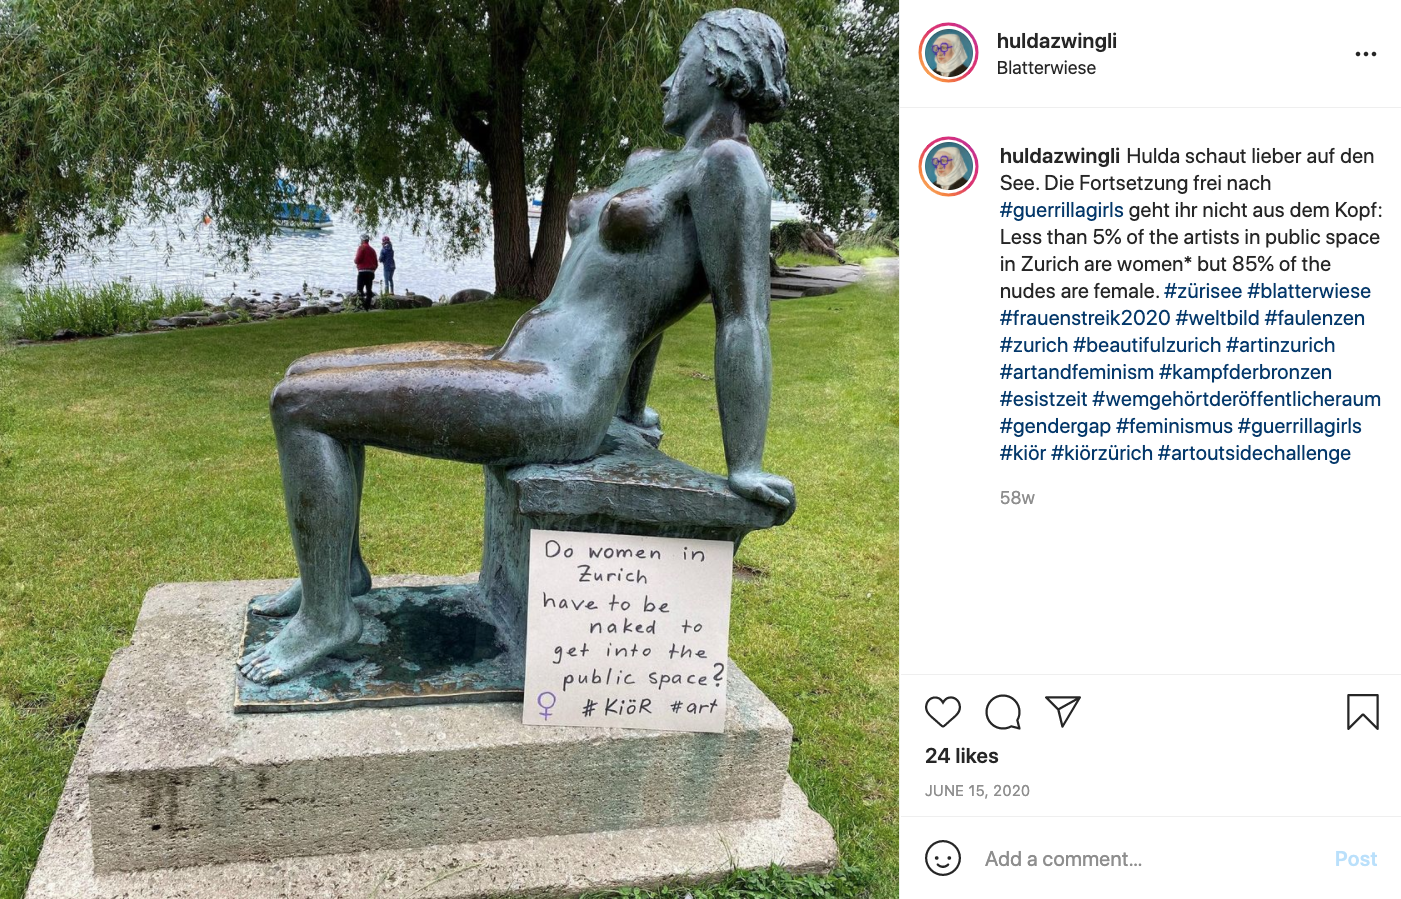 messaggio davanti a una statua di donna nuda